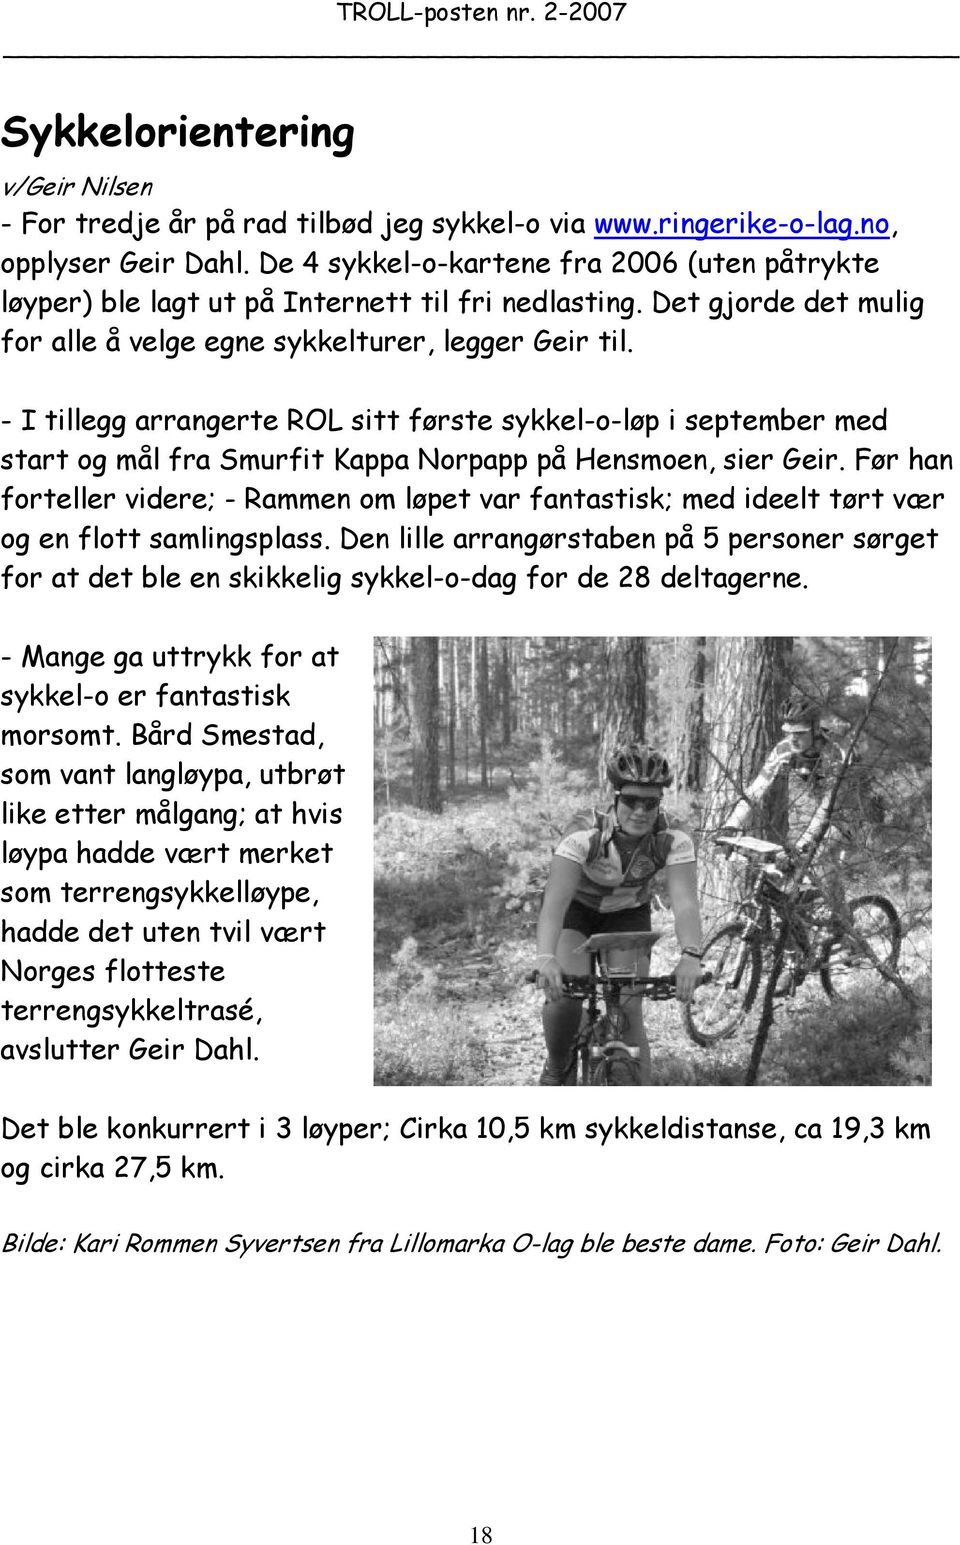 - I tillegg arrangerte ROL sitt første sykkel-o-løp i september med start og mål fra Smurfit Kappa Norpapp på Hensmoen, sier Geir.